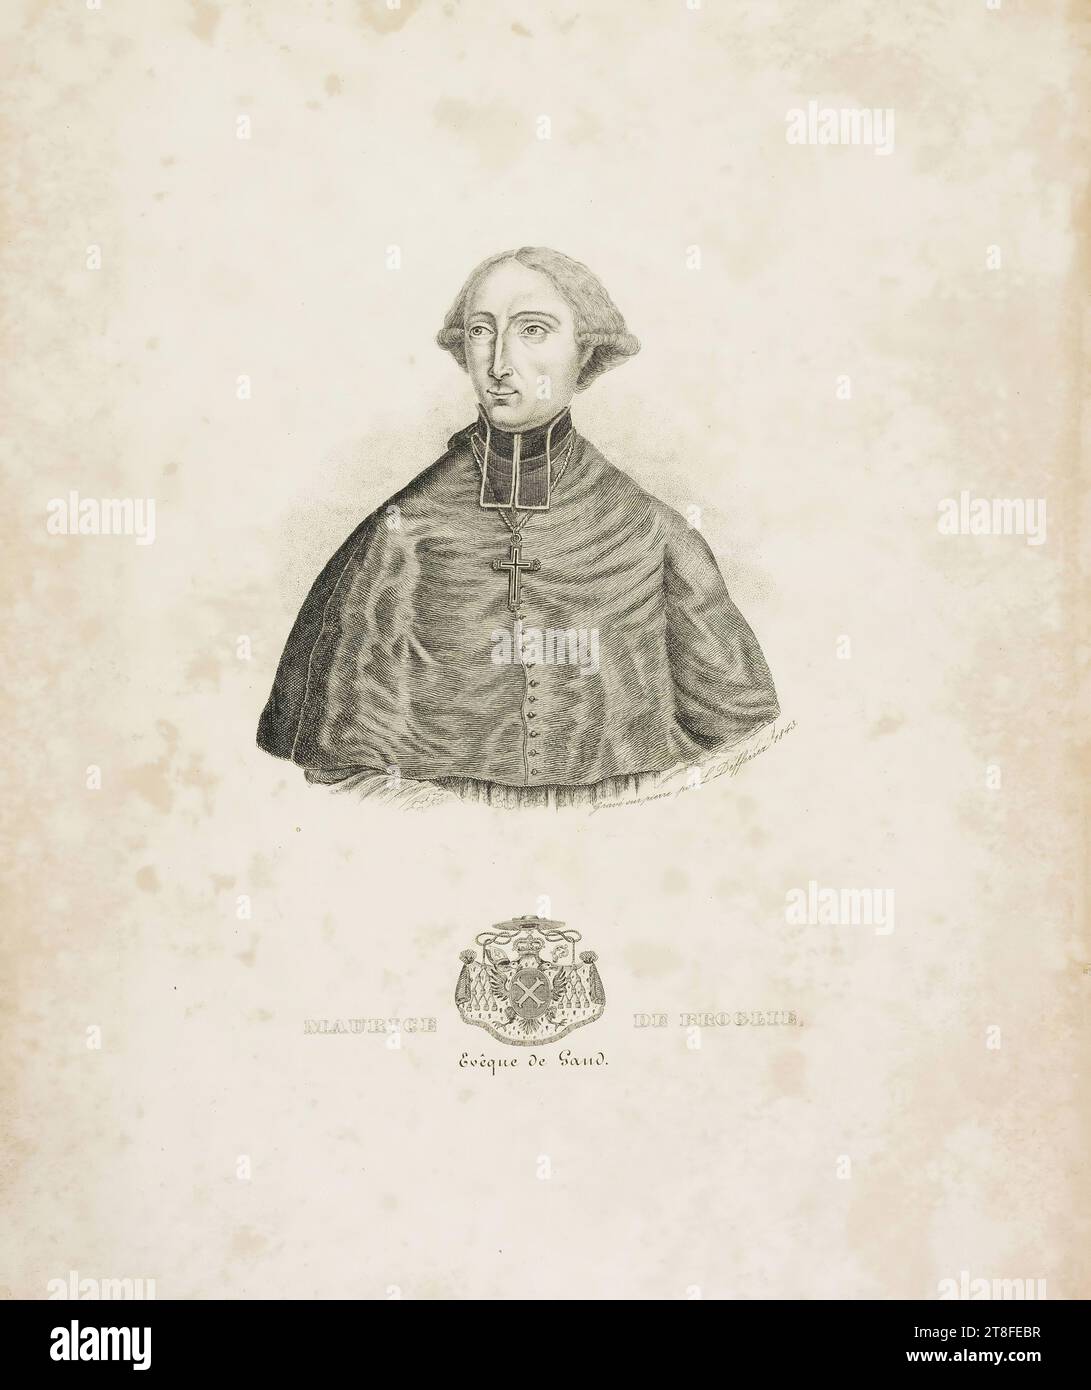 Ritratto dell'uomo con stemma inferiore che indica la gerarchia ecclesiastica. Inciso su pietra da L. Defferrez 1843. MAURICE DE BROGLIE, vescovo di Gand Foto Stock